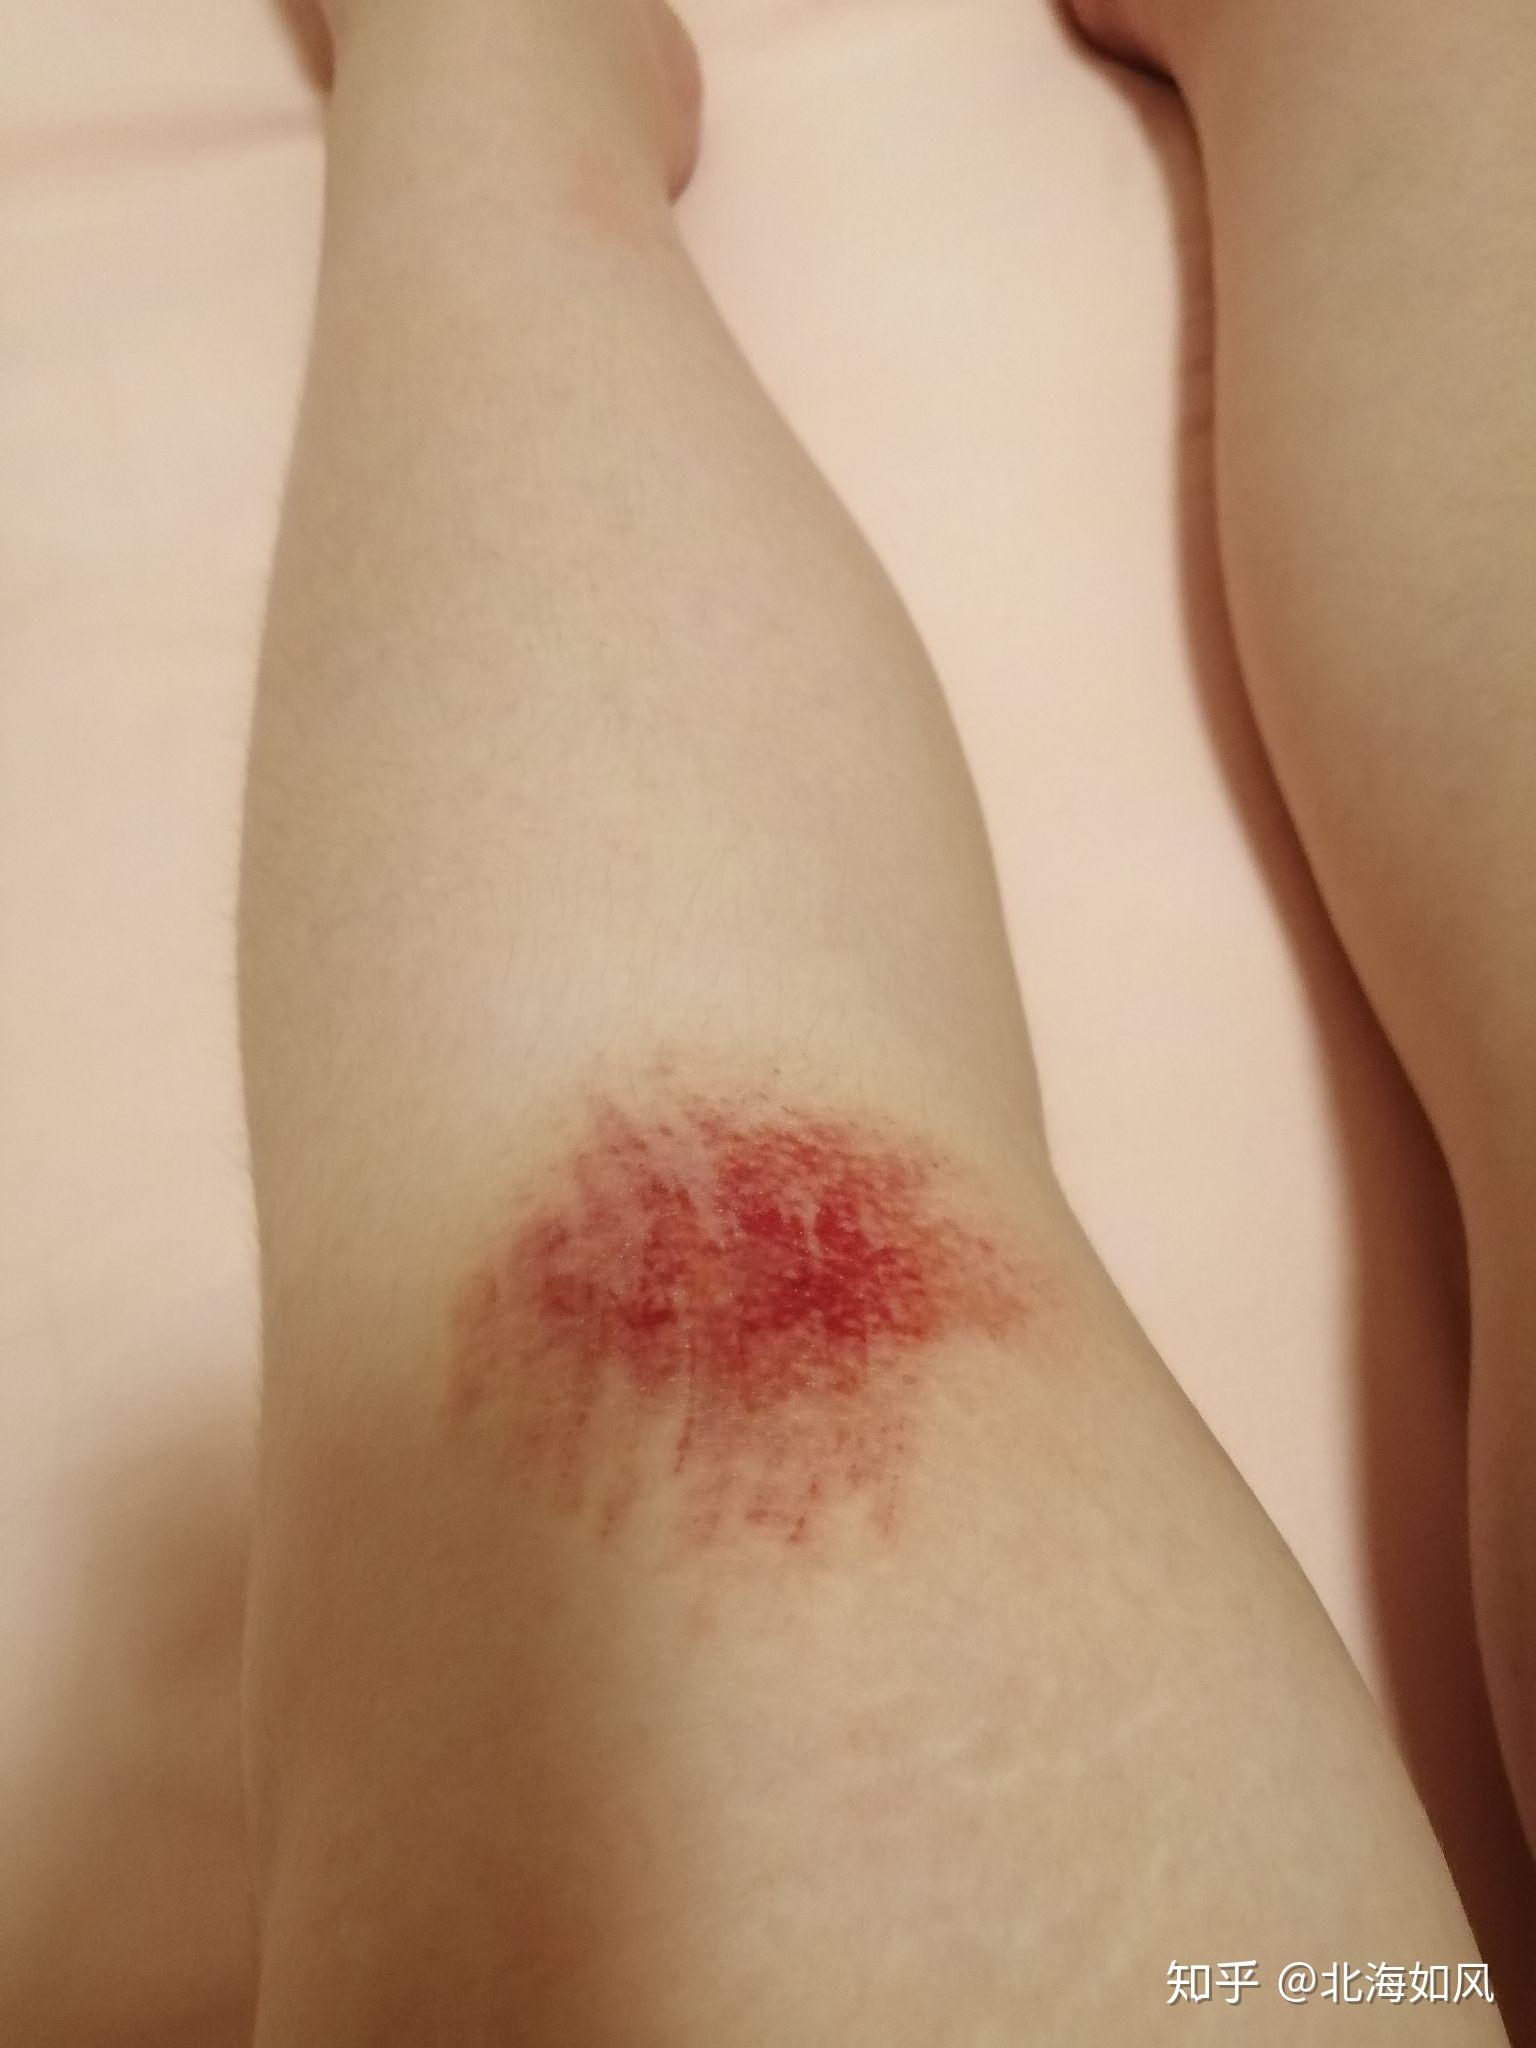 骑车侧翻膝盖摔伤破皮,怎么处理伤口,怎样才能不留疤? 